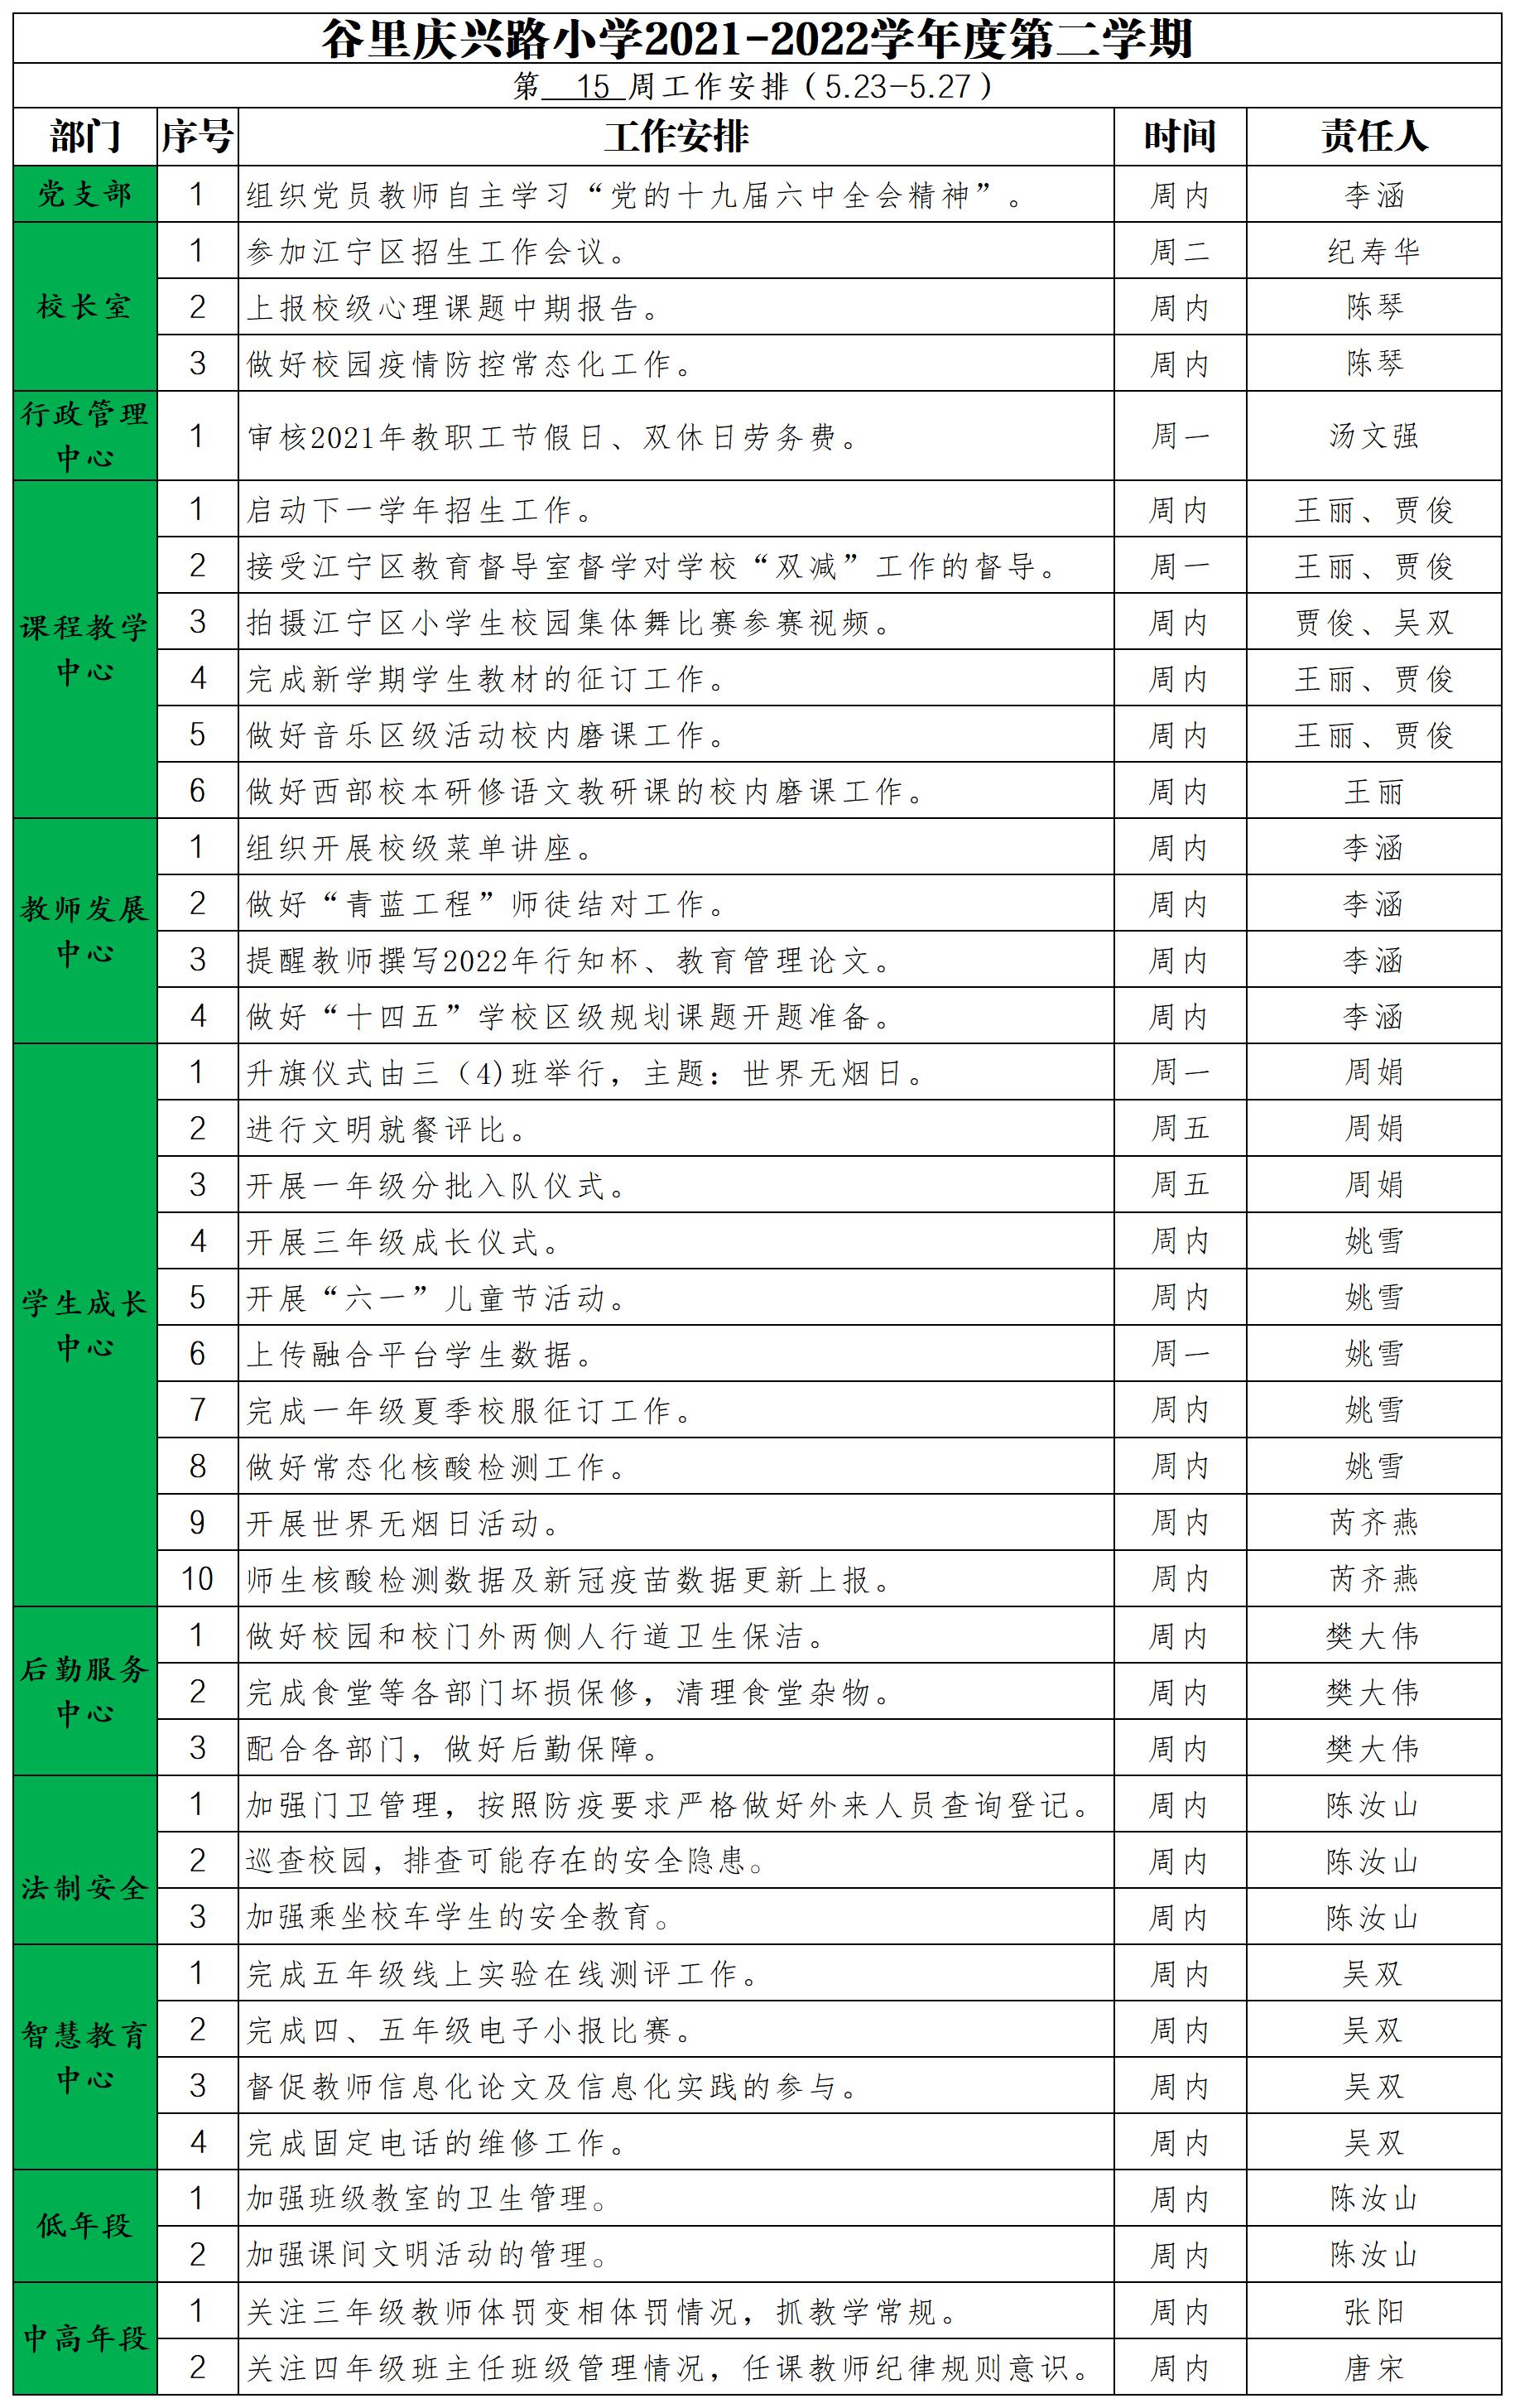 庆兴路小学2021——2022学年度第二学期15周工作安排(3).jpg